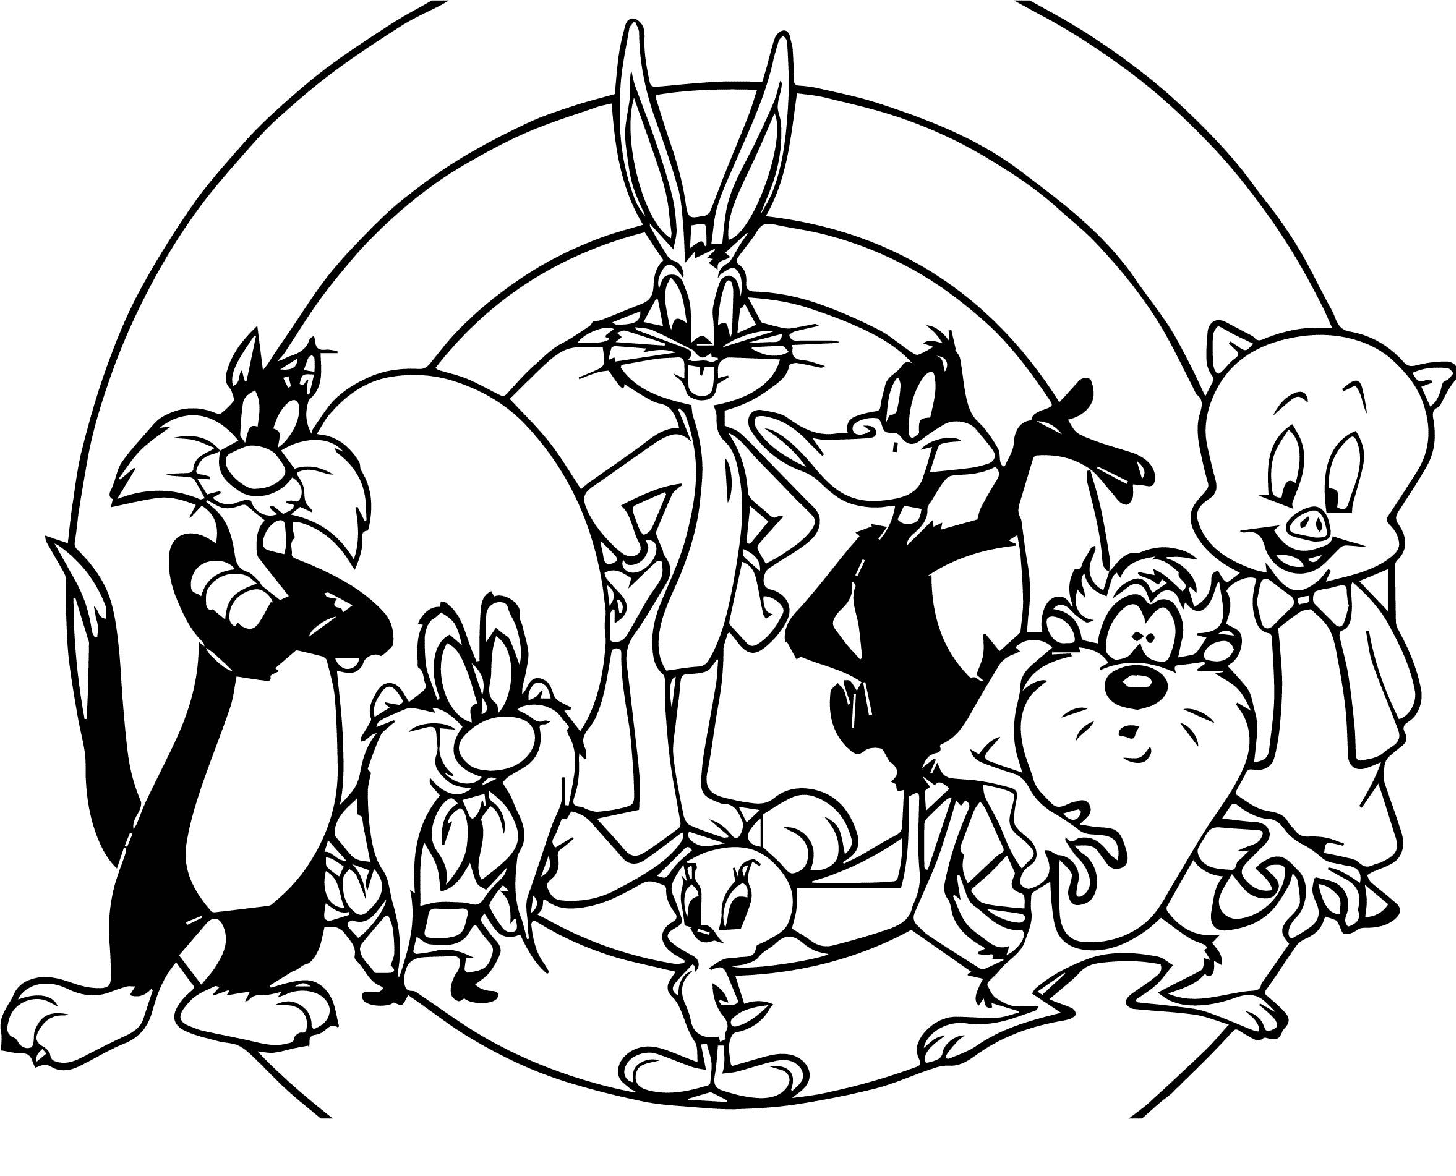 Looney Tunes Todos los personajes de Personajes de Looney Tunes